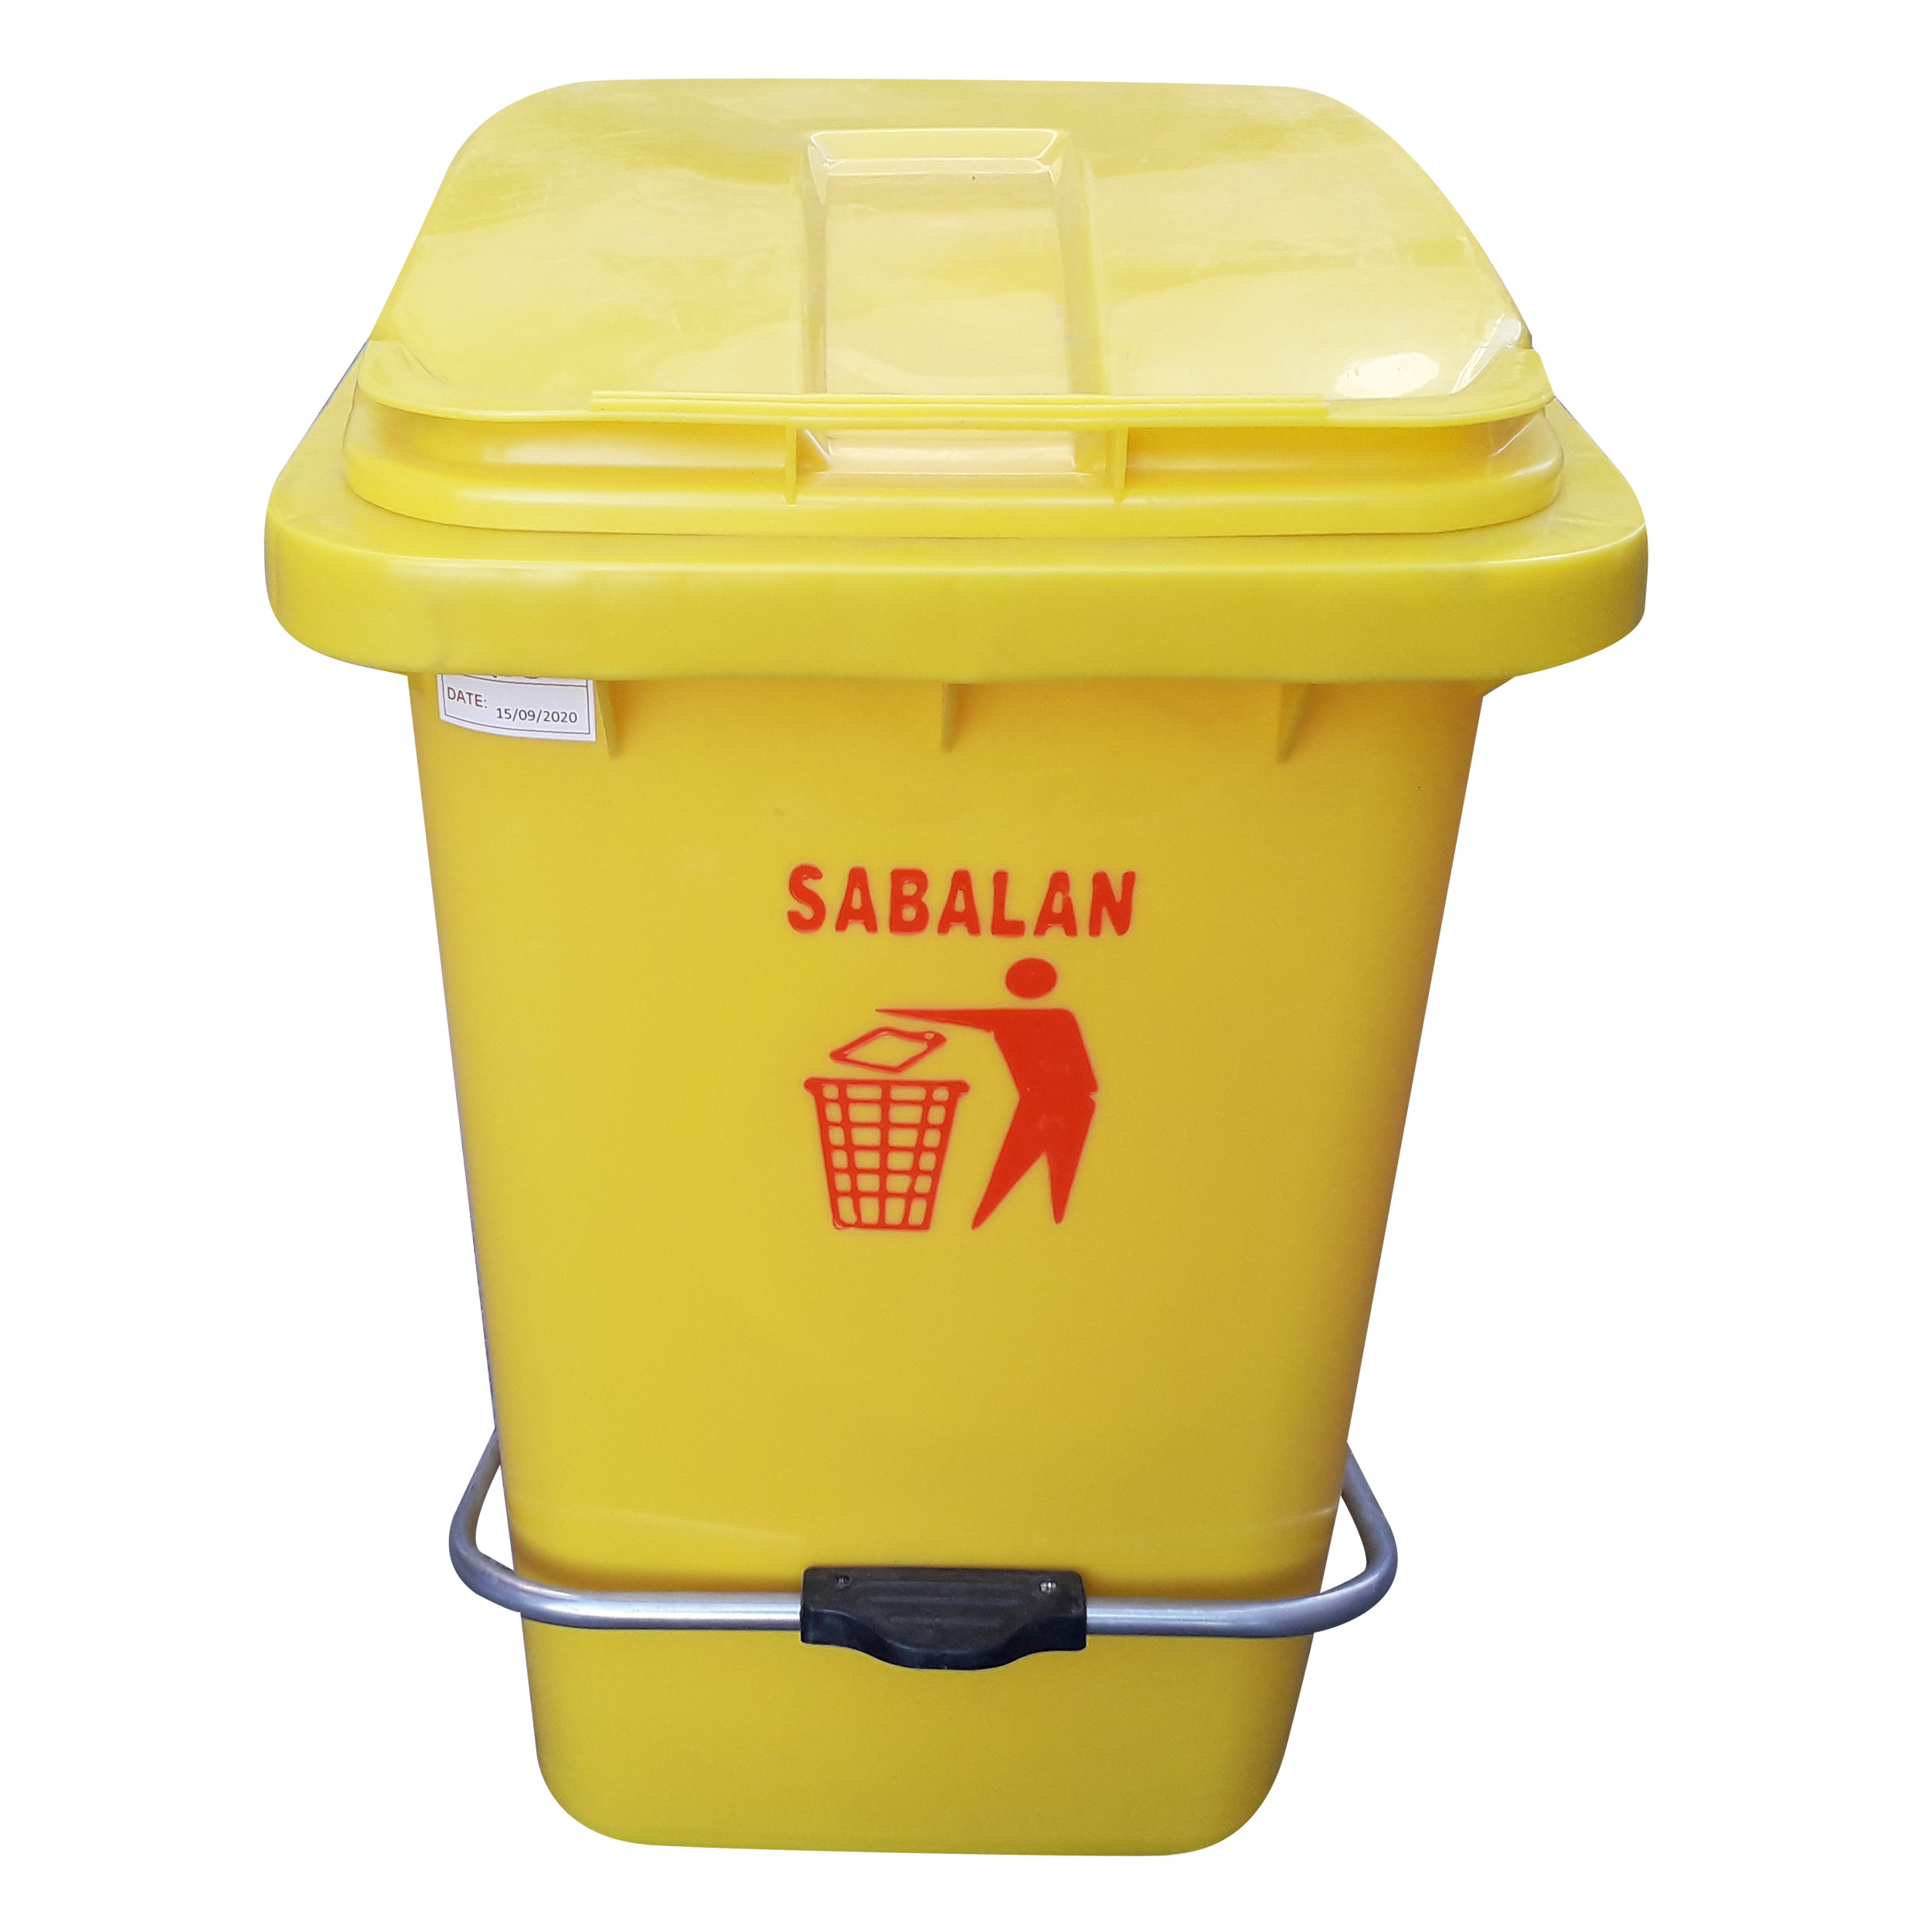  سطل زباله مدل سبلان